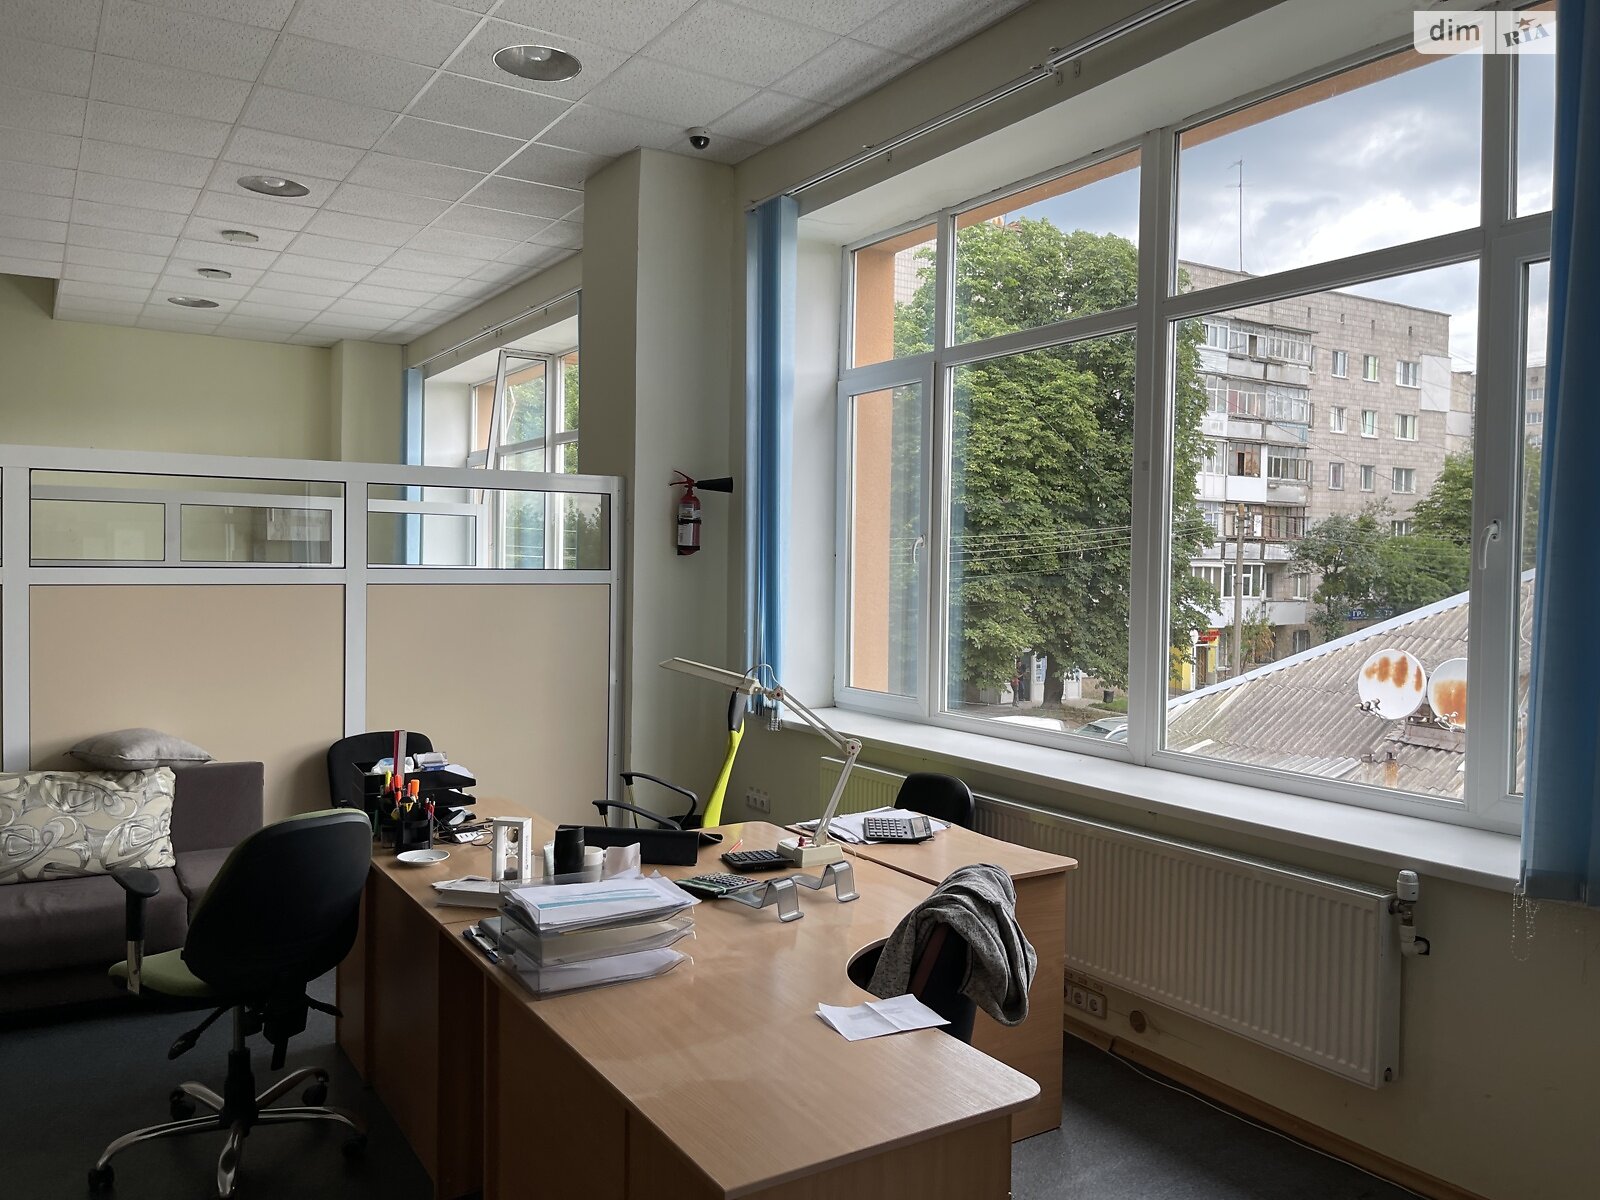 Аренда офисного помещения в Житомире, Житомир. Гагаріна 47, помещений - 1, этаж - 3 фото 1